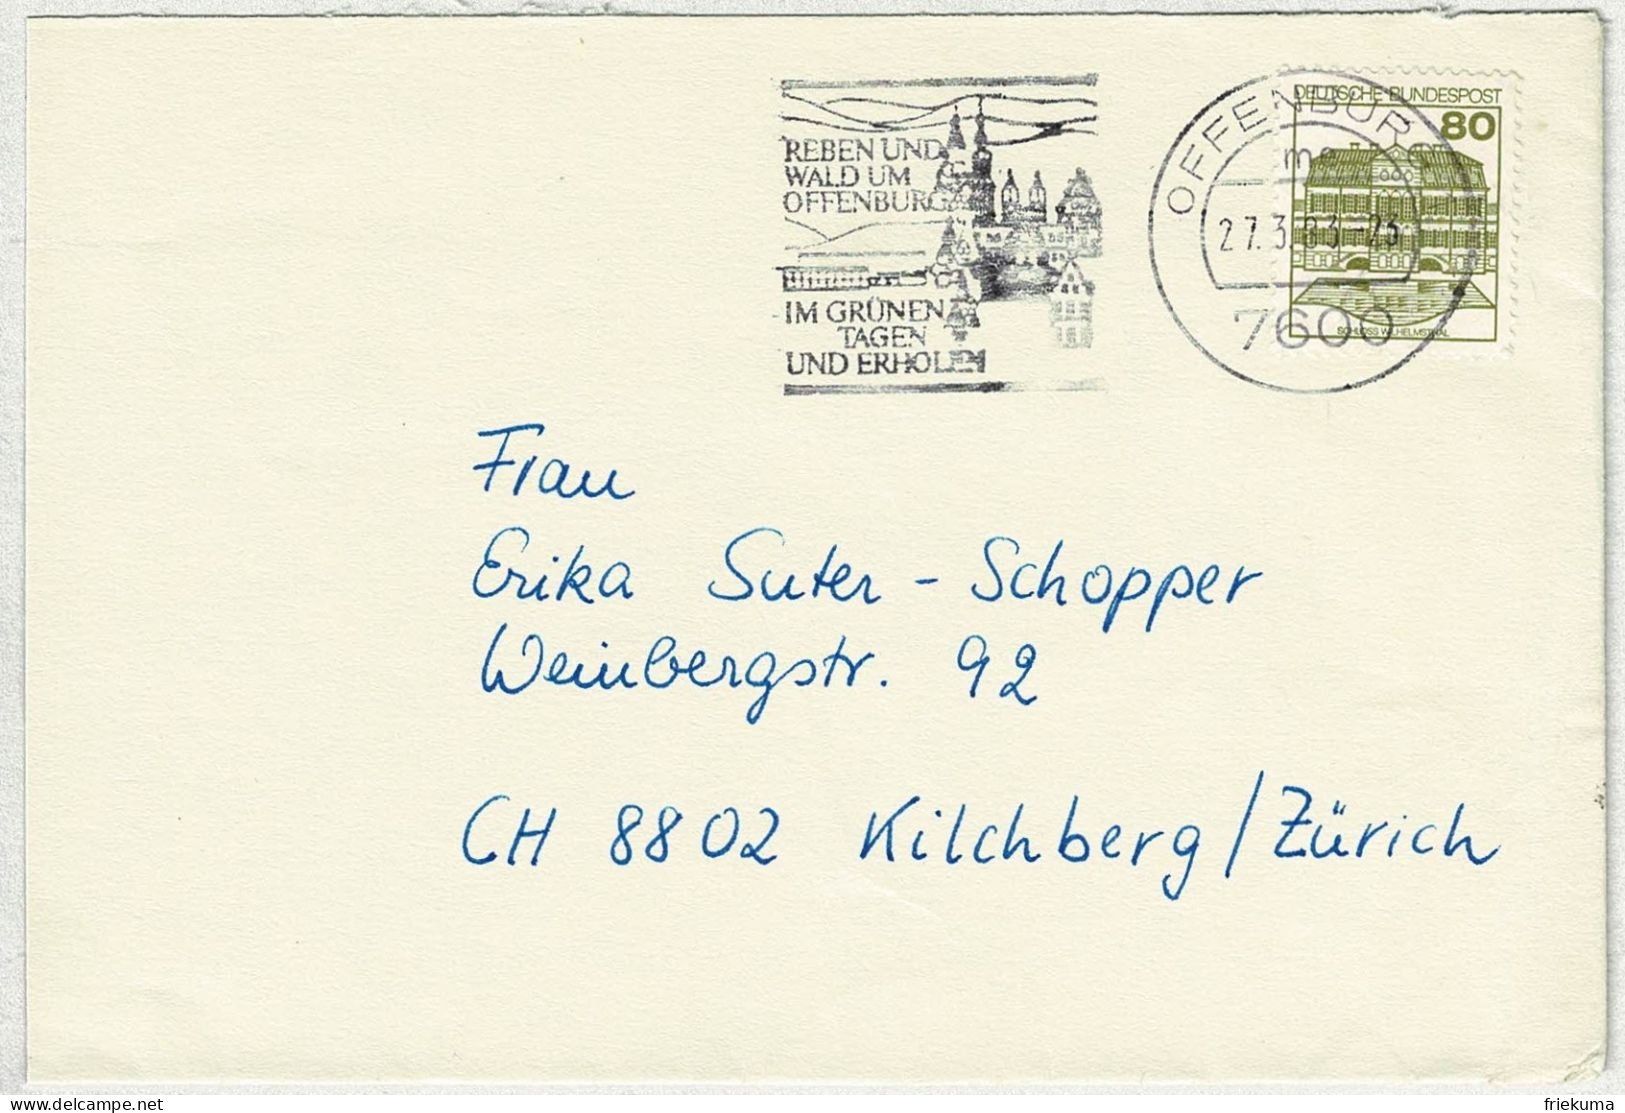 Deutsche Bundespost 1983, Brief Offenburg - Kilchberg (Schweiz) - Covers & Documents